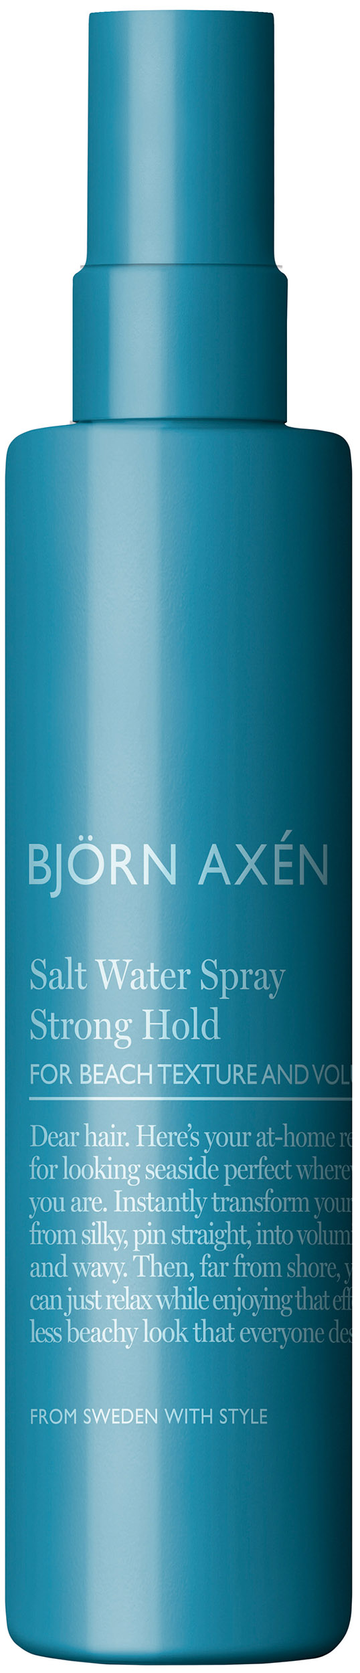 Björn Axén Salt Water Spray 